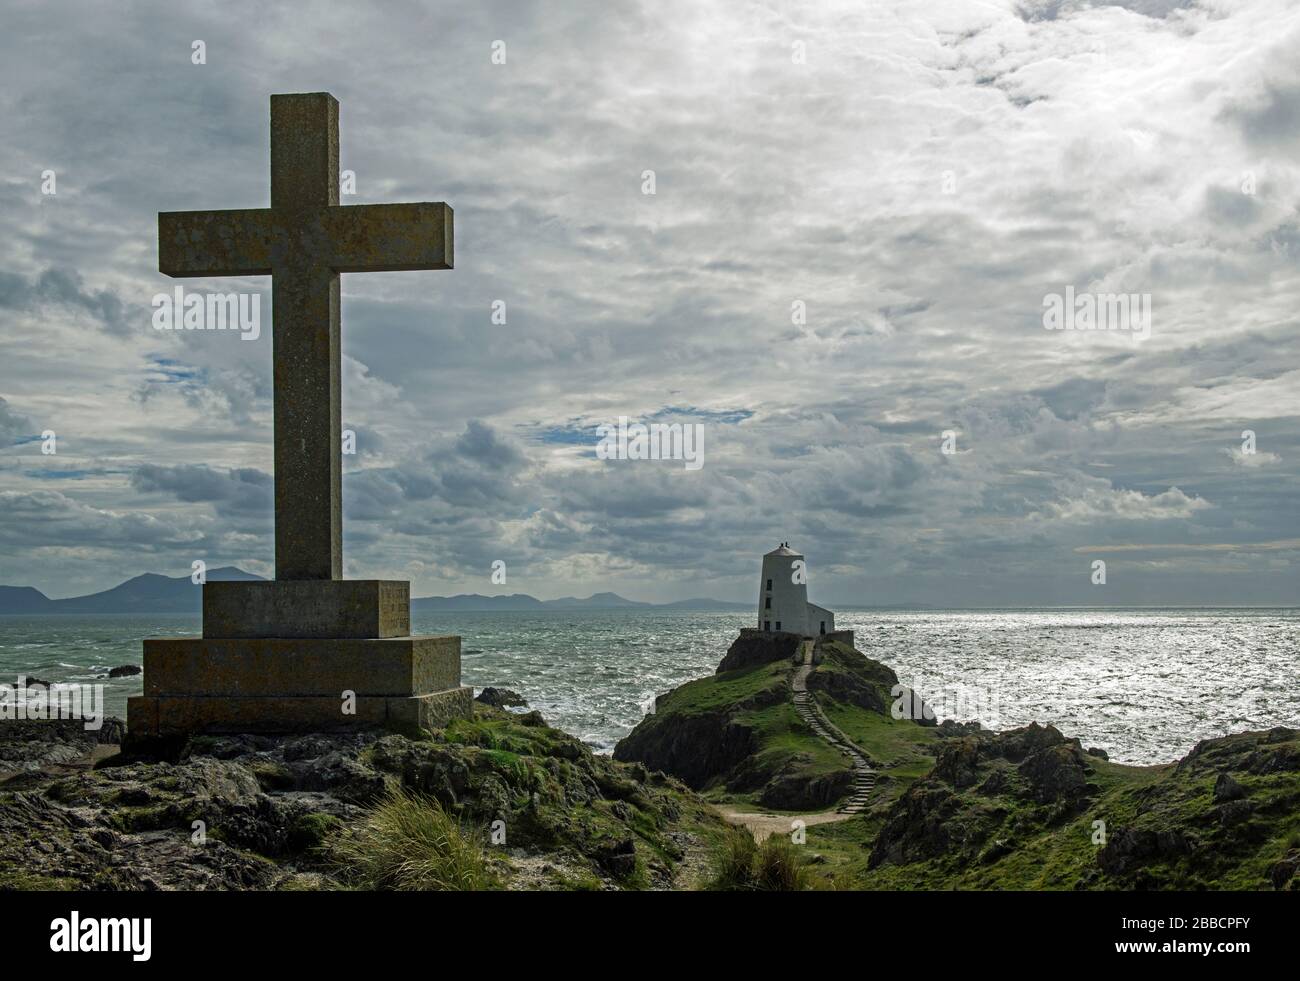 Isla Llanddwyn frente a la costa de Anglesey. Esto muestra una de las varias cruces en la isla junto con el faro de Ty Mawr con una puesta de sol de plata Foto de stock